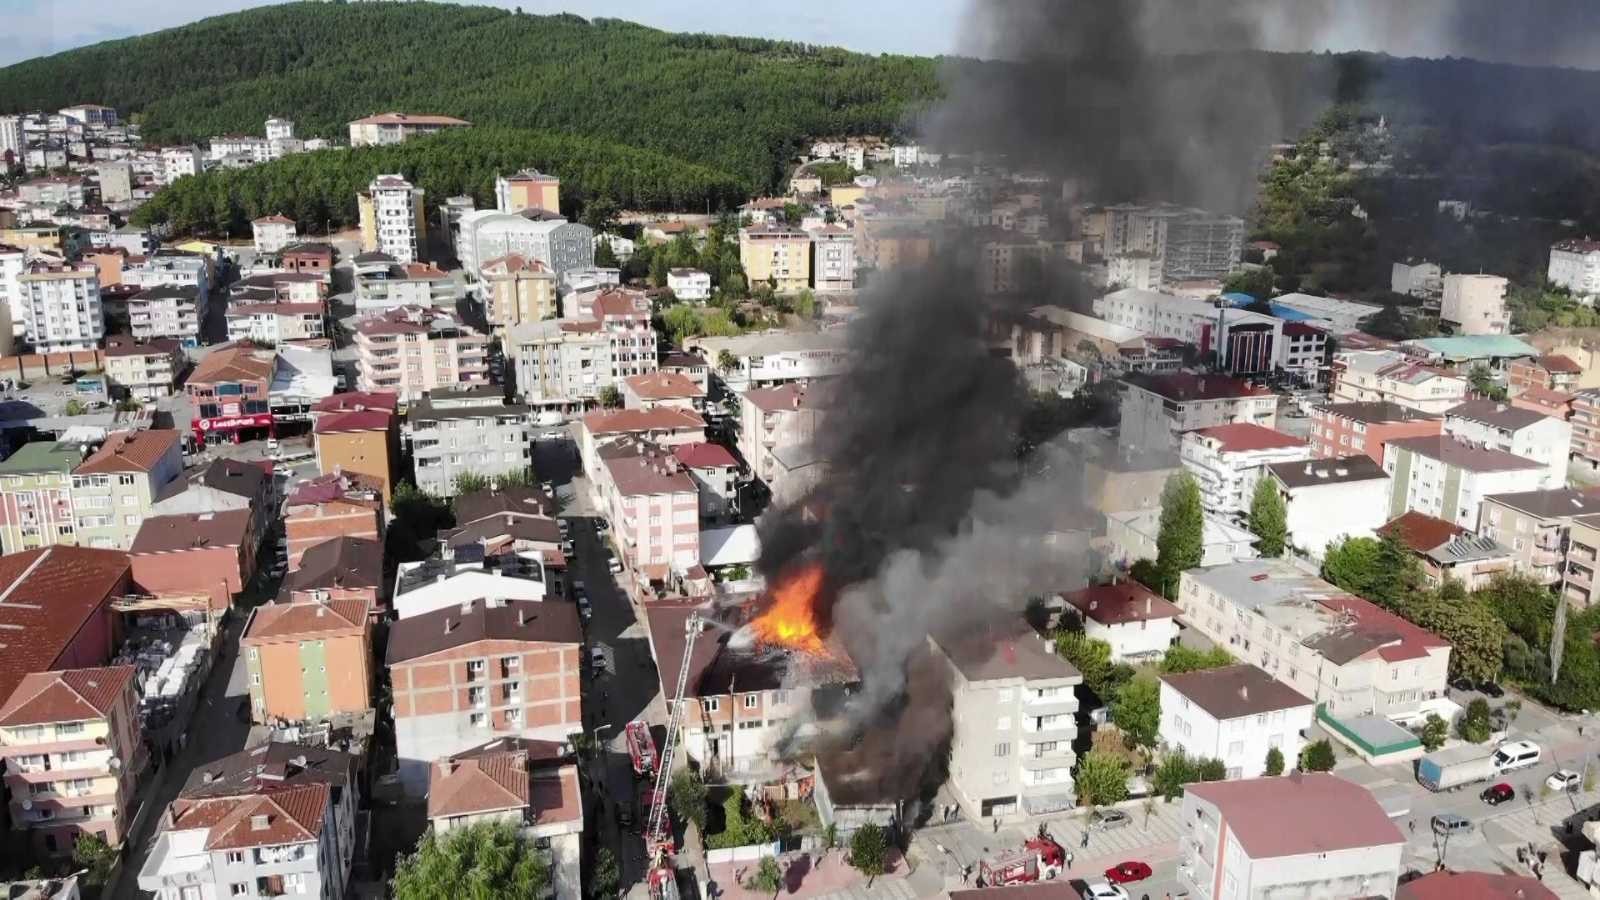 Sultanbeyli’de çatının alev alev yandığı anlar havadan görüntülendi #istanbul